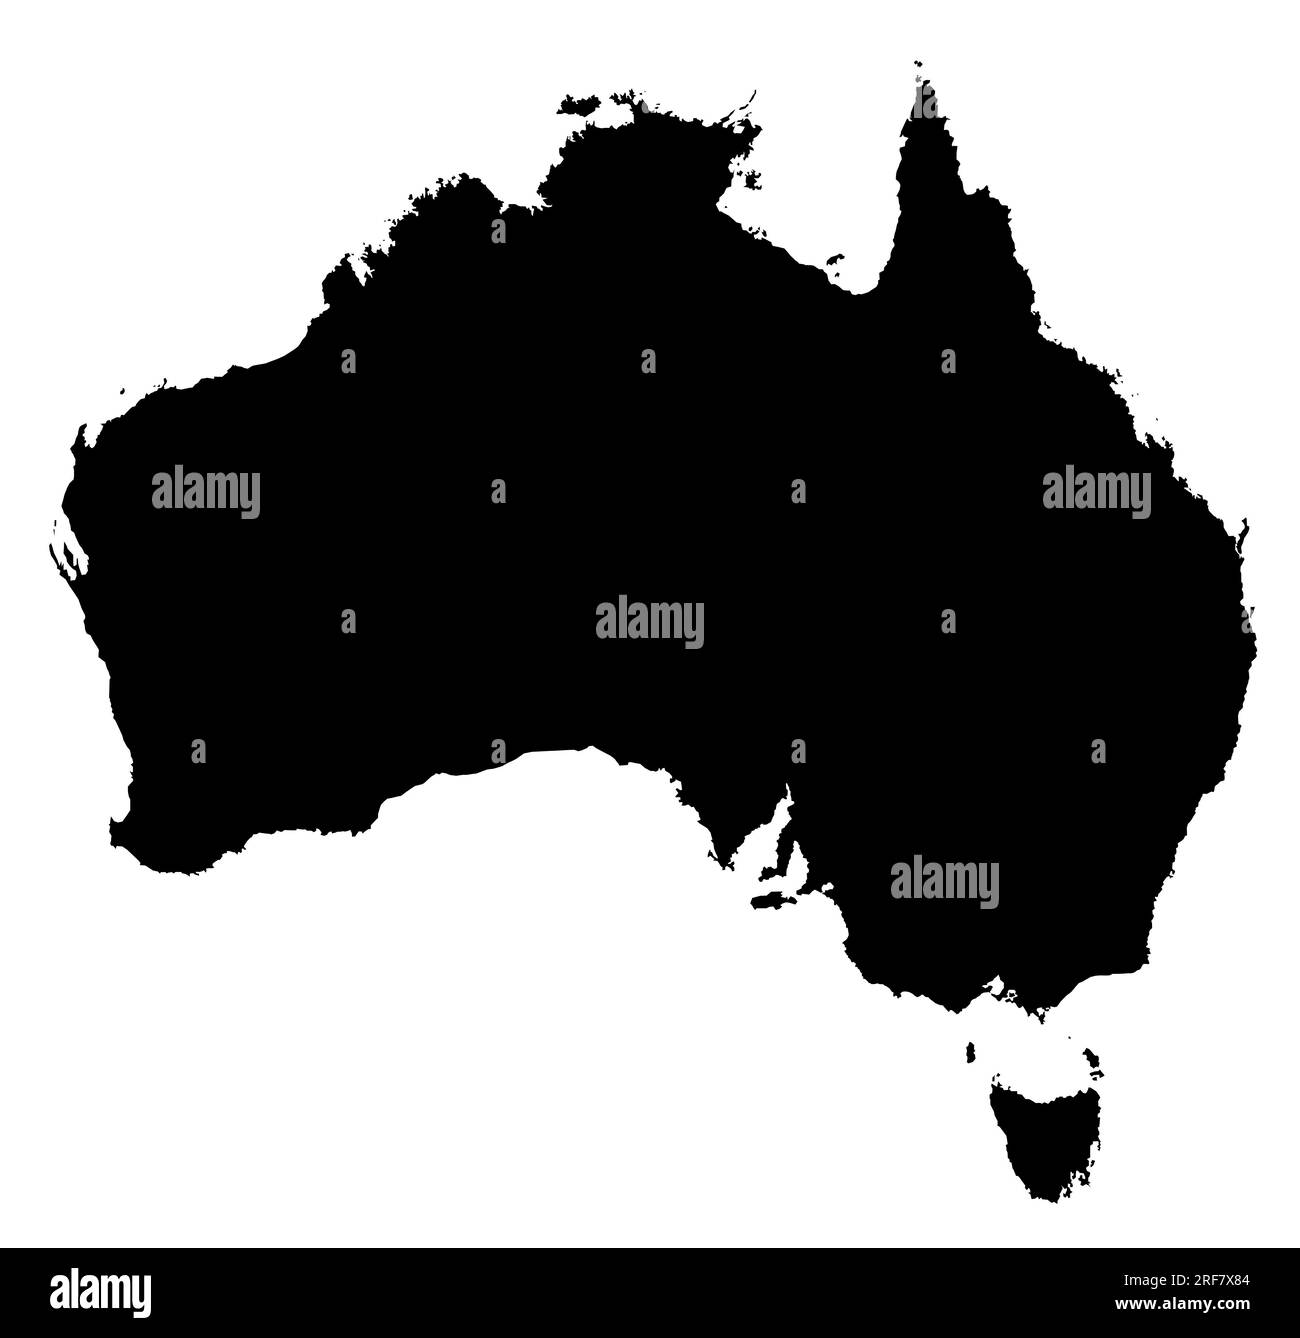 Carte de silhouette d'illustration vectorielle détaillée du continent australien Banque D'Images